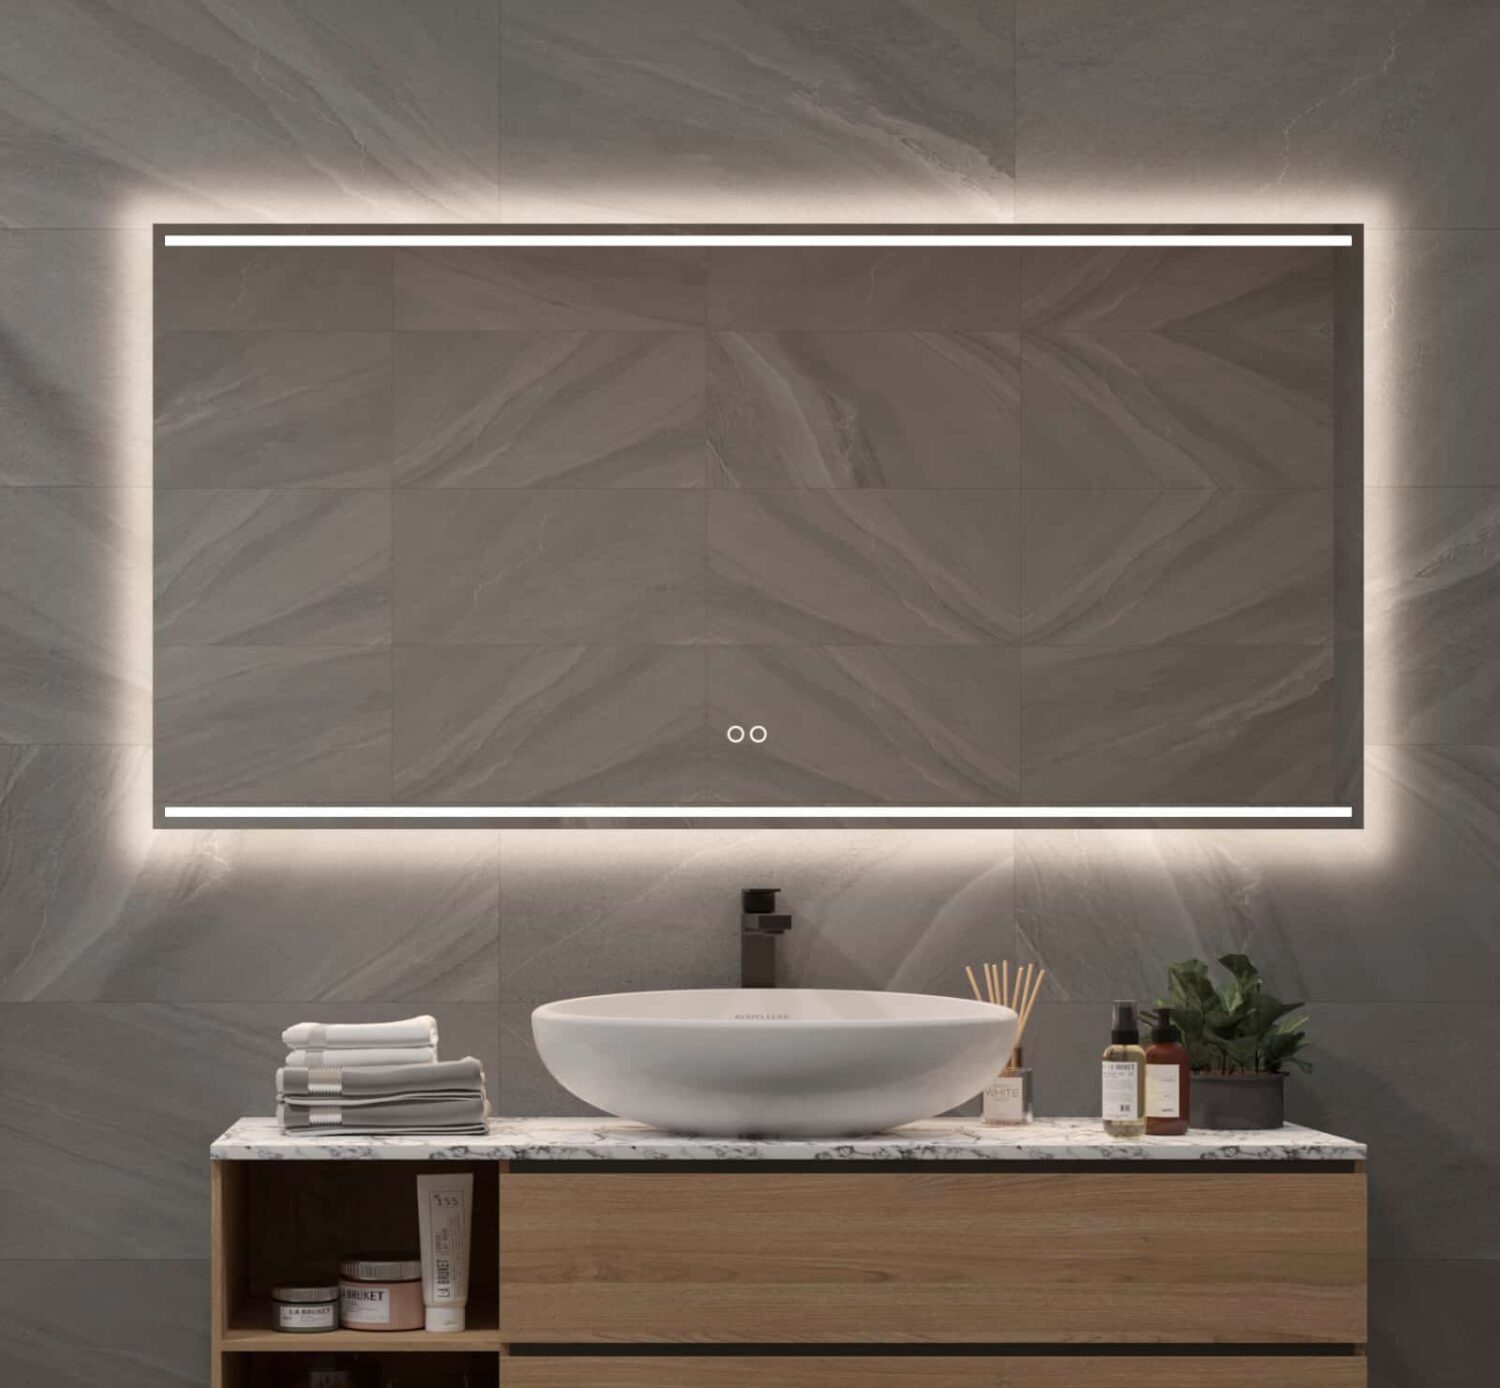 Badkamer spiegel met fraaie designer verlichting, spiegelverwarming en dubbele touch knop met dimfunctie en instelbare lichtkleur